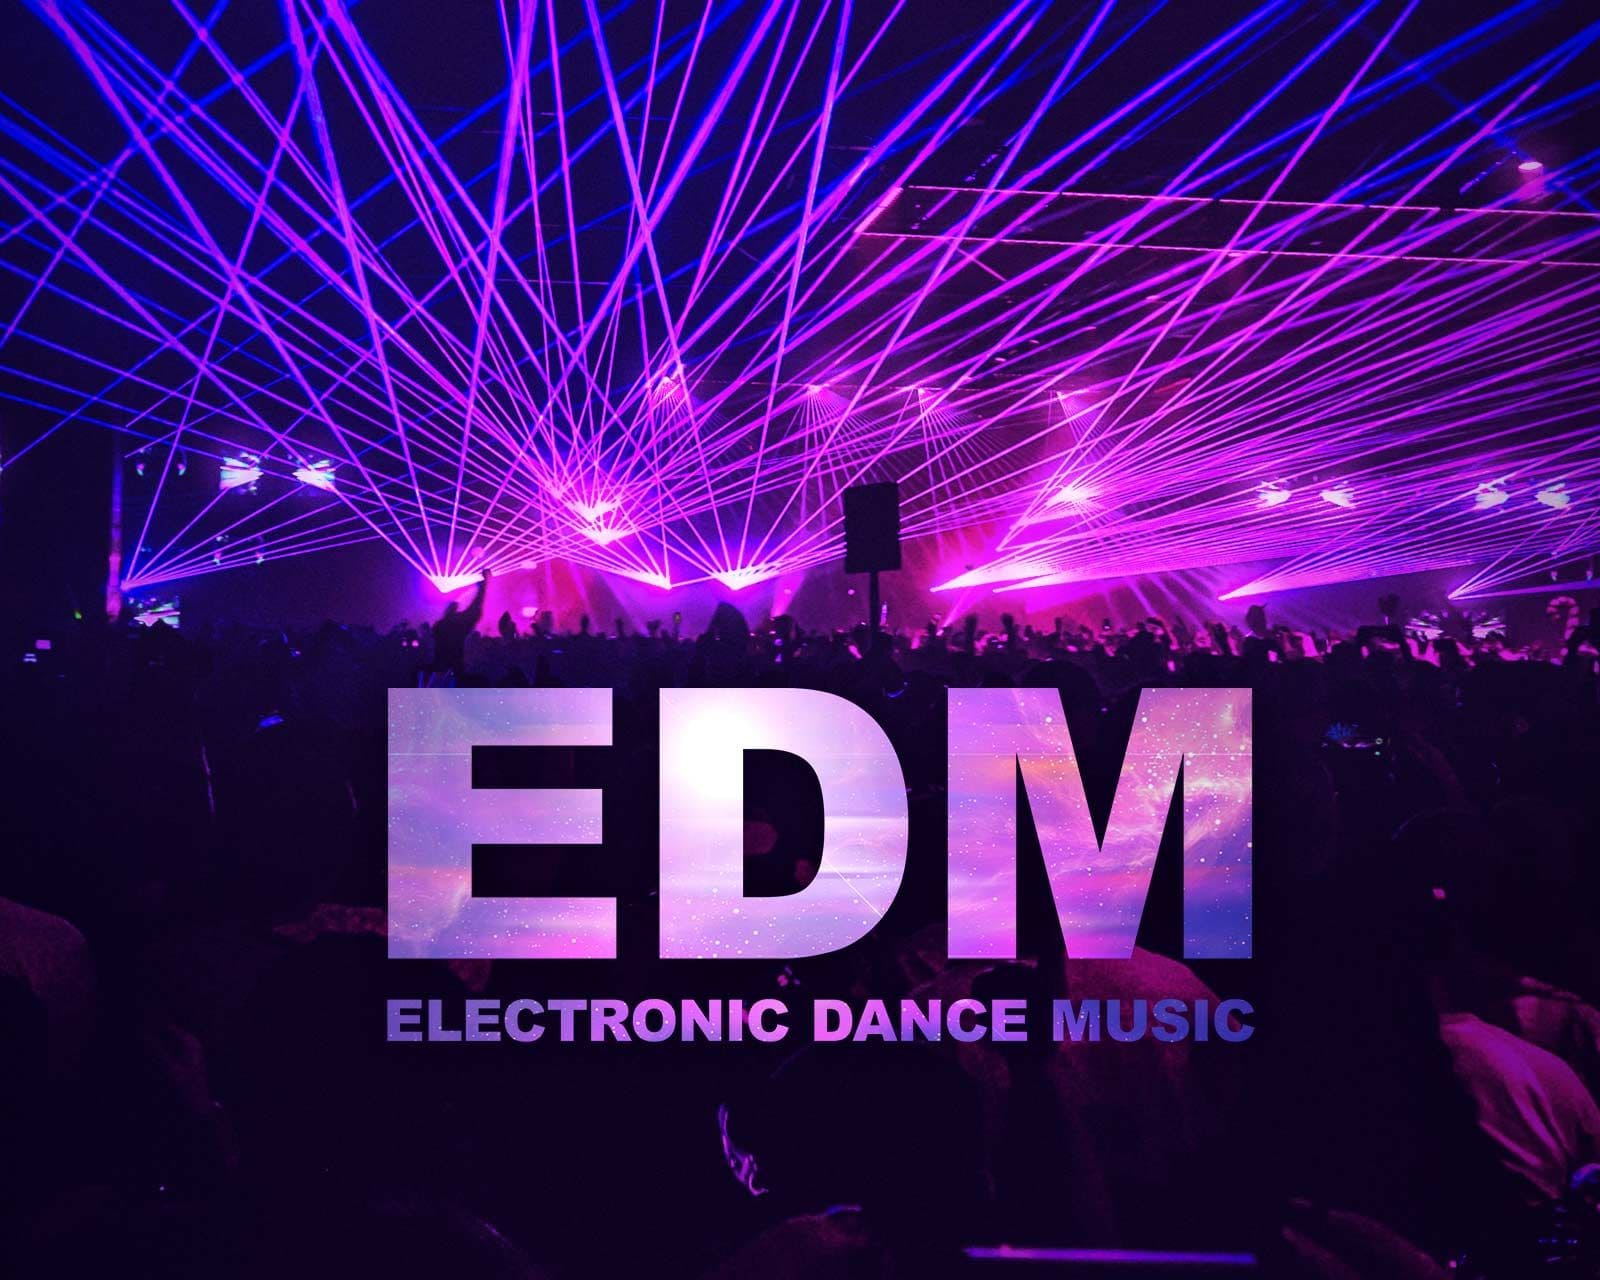 Edm house music. EDM обложка. Обложка для EDM музыки. EDM логотип. EDM 2021.